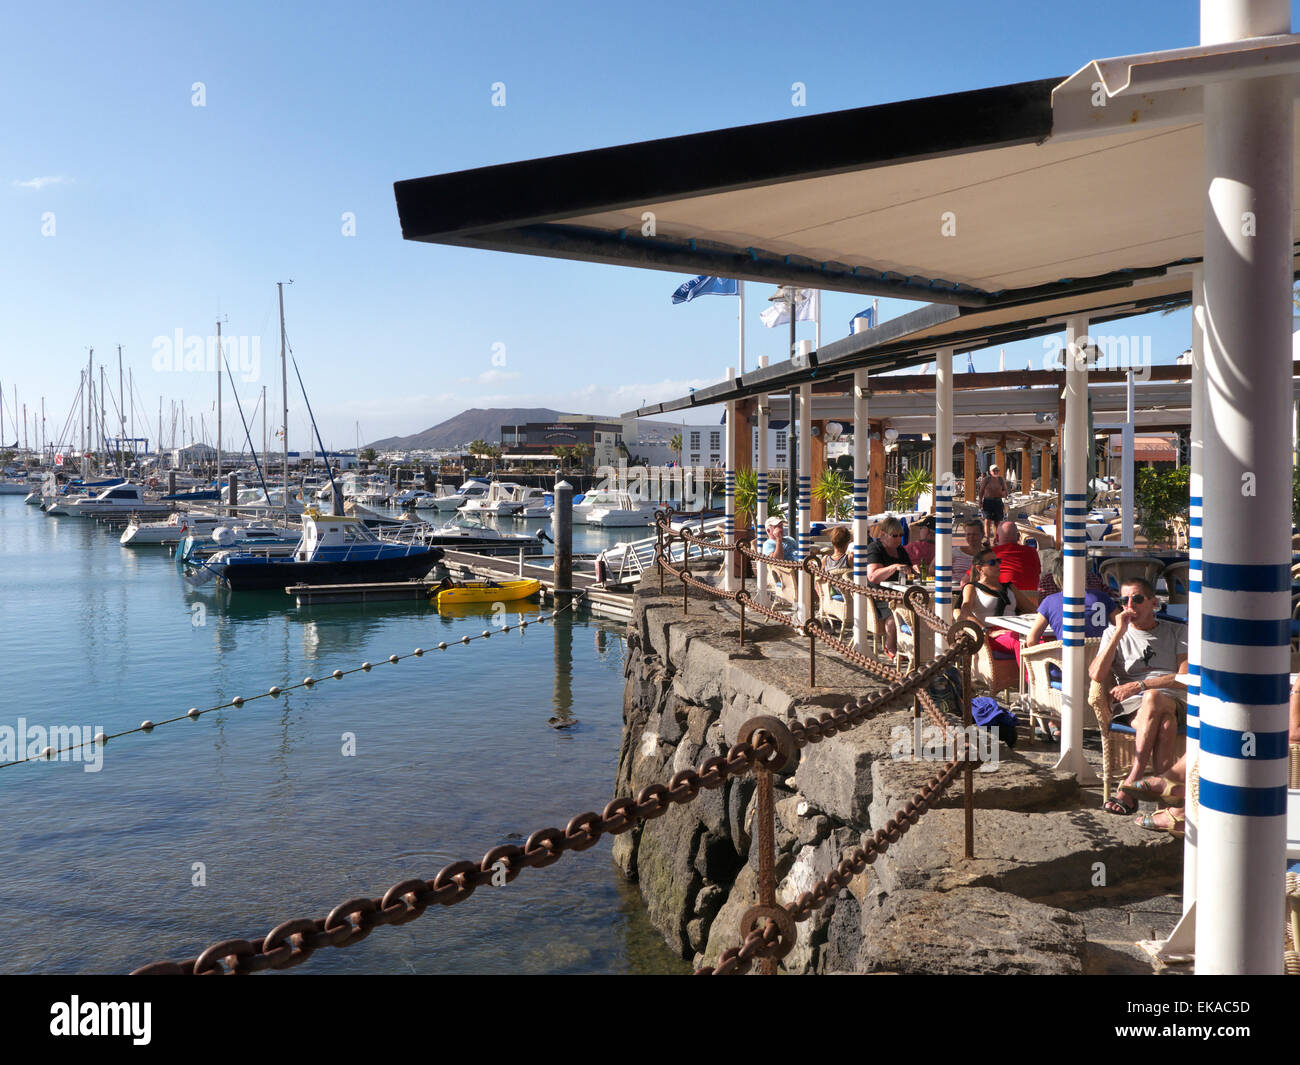 Restaurant au bord de l'Alfresco de Lanzarote à Marina Rubicon avec aux personnes bénéficiant d'une vue sur la mer et les restaurants en plein air, repas Lanzarote Iles Canaries Espagne Banque D'Images